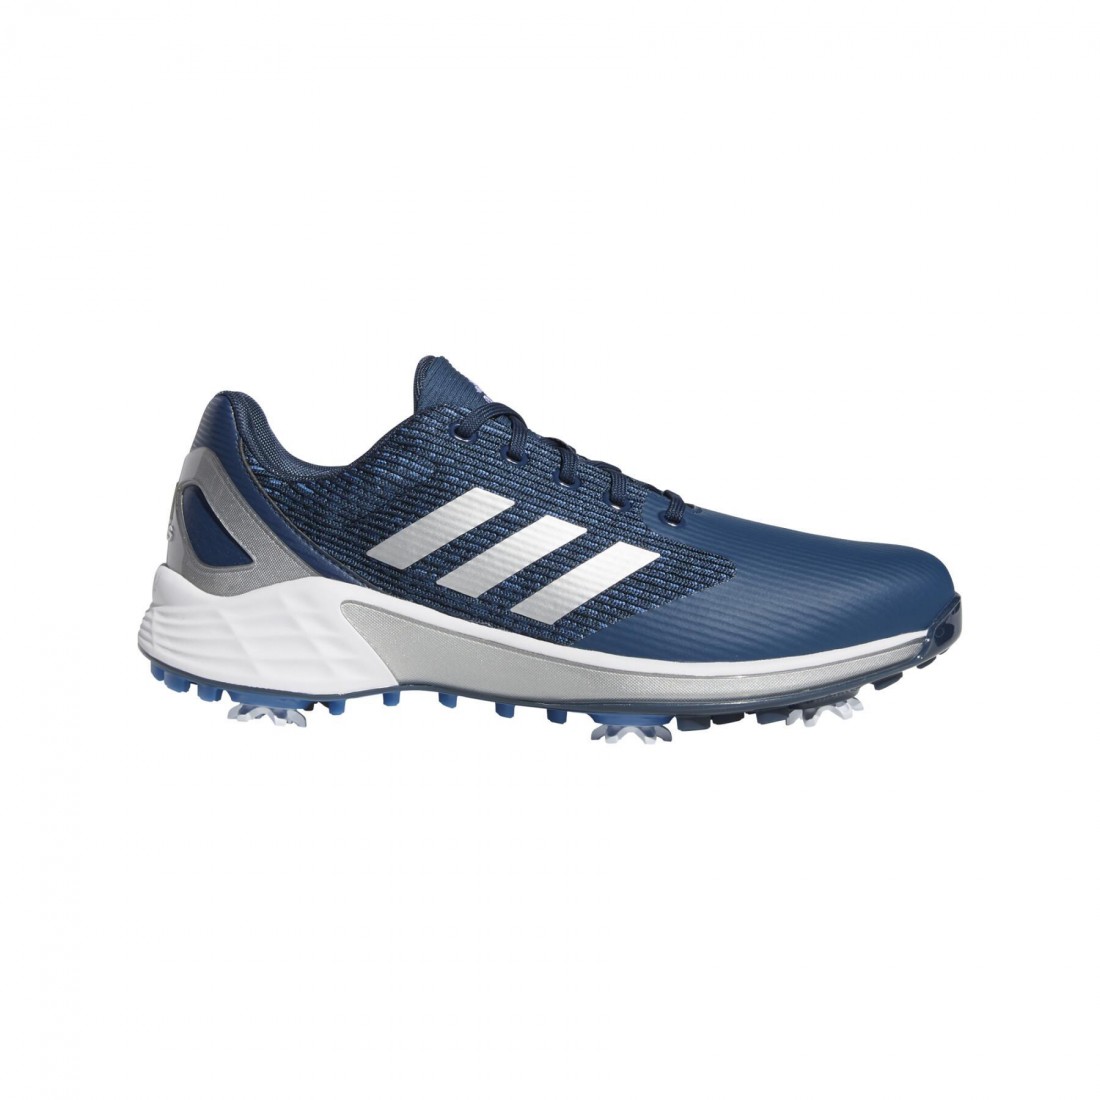 ZG21 Recycled Polyester Golf Shoes Synthétique adidas pour homme en coloris Bleu Homme Chaussures Baskets Baskets basses 10 % de réduction 